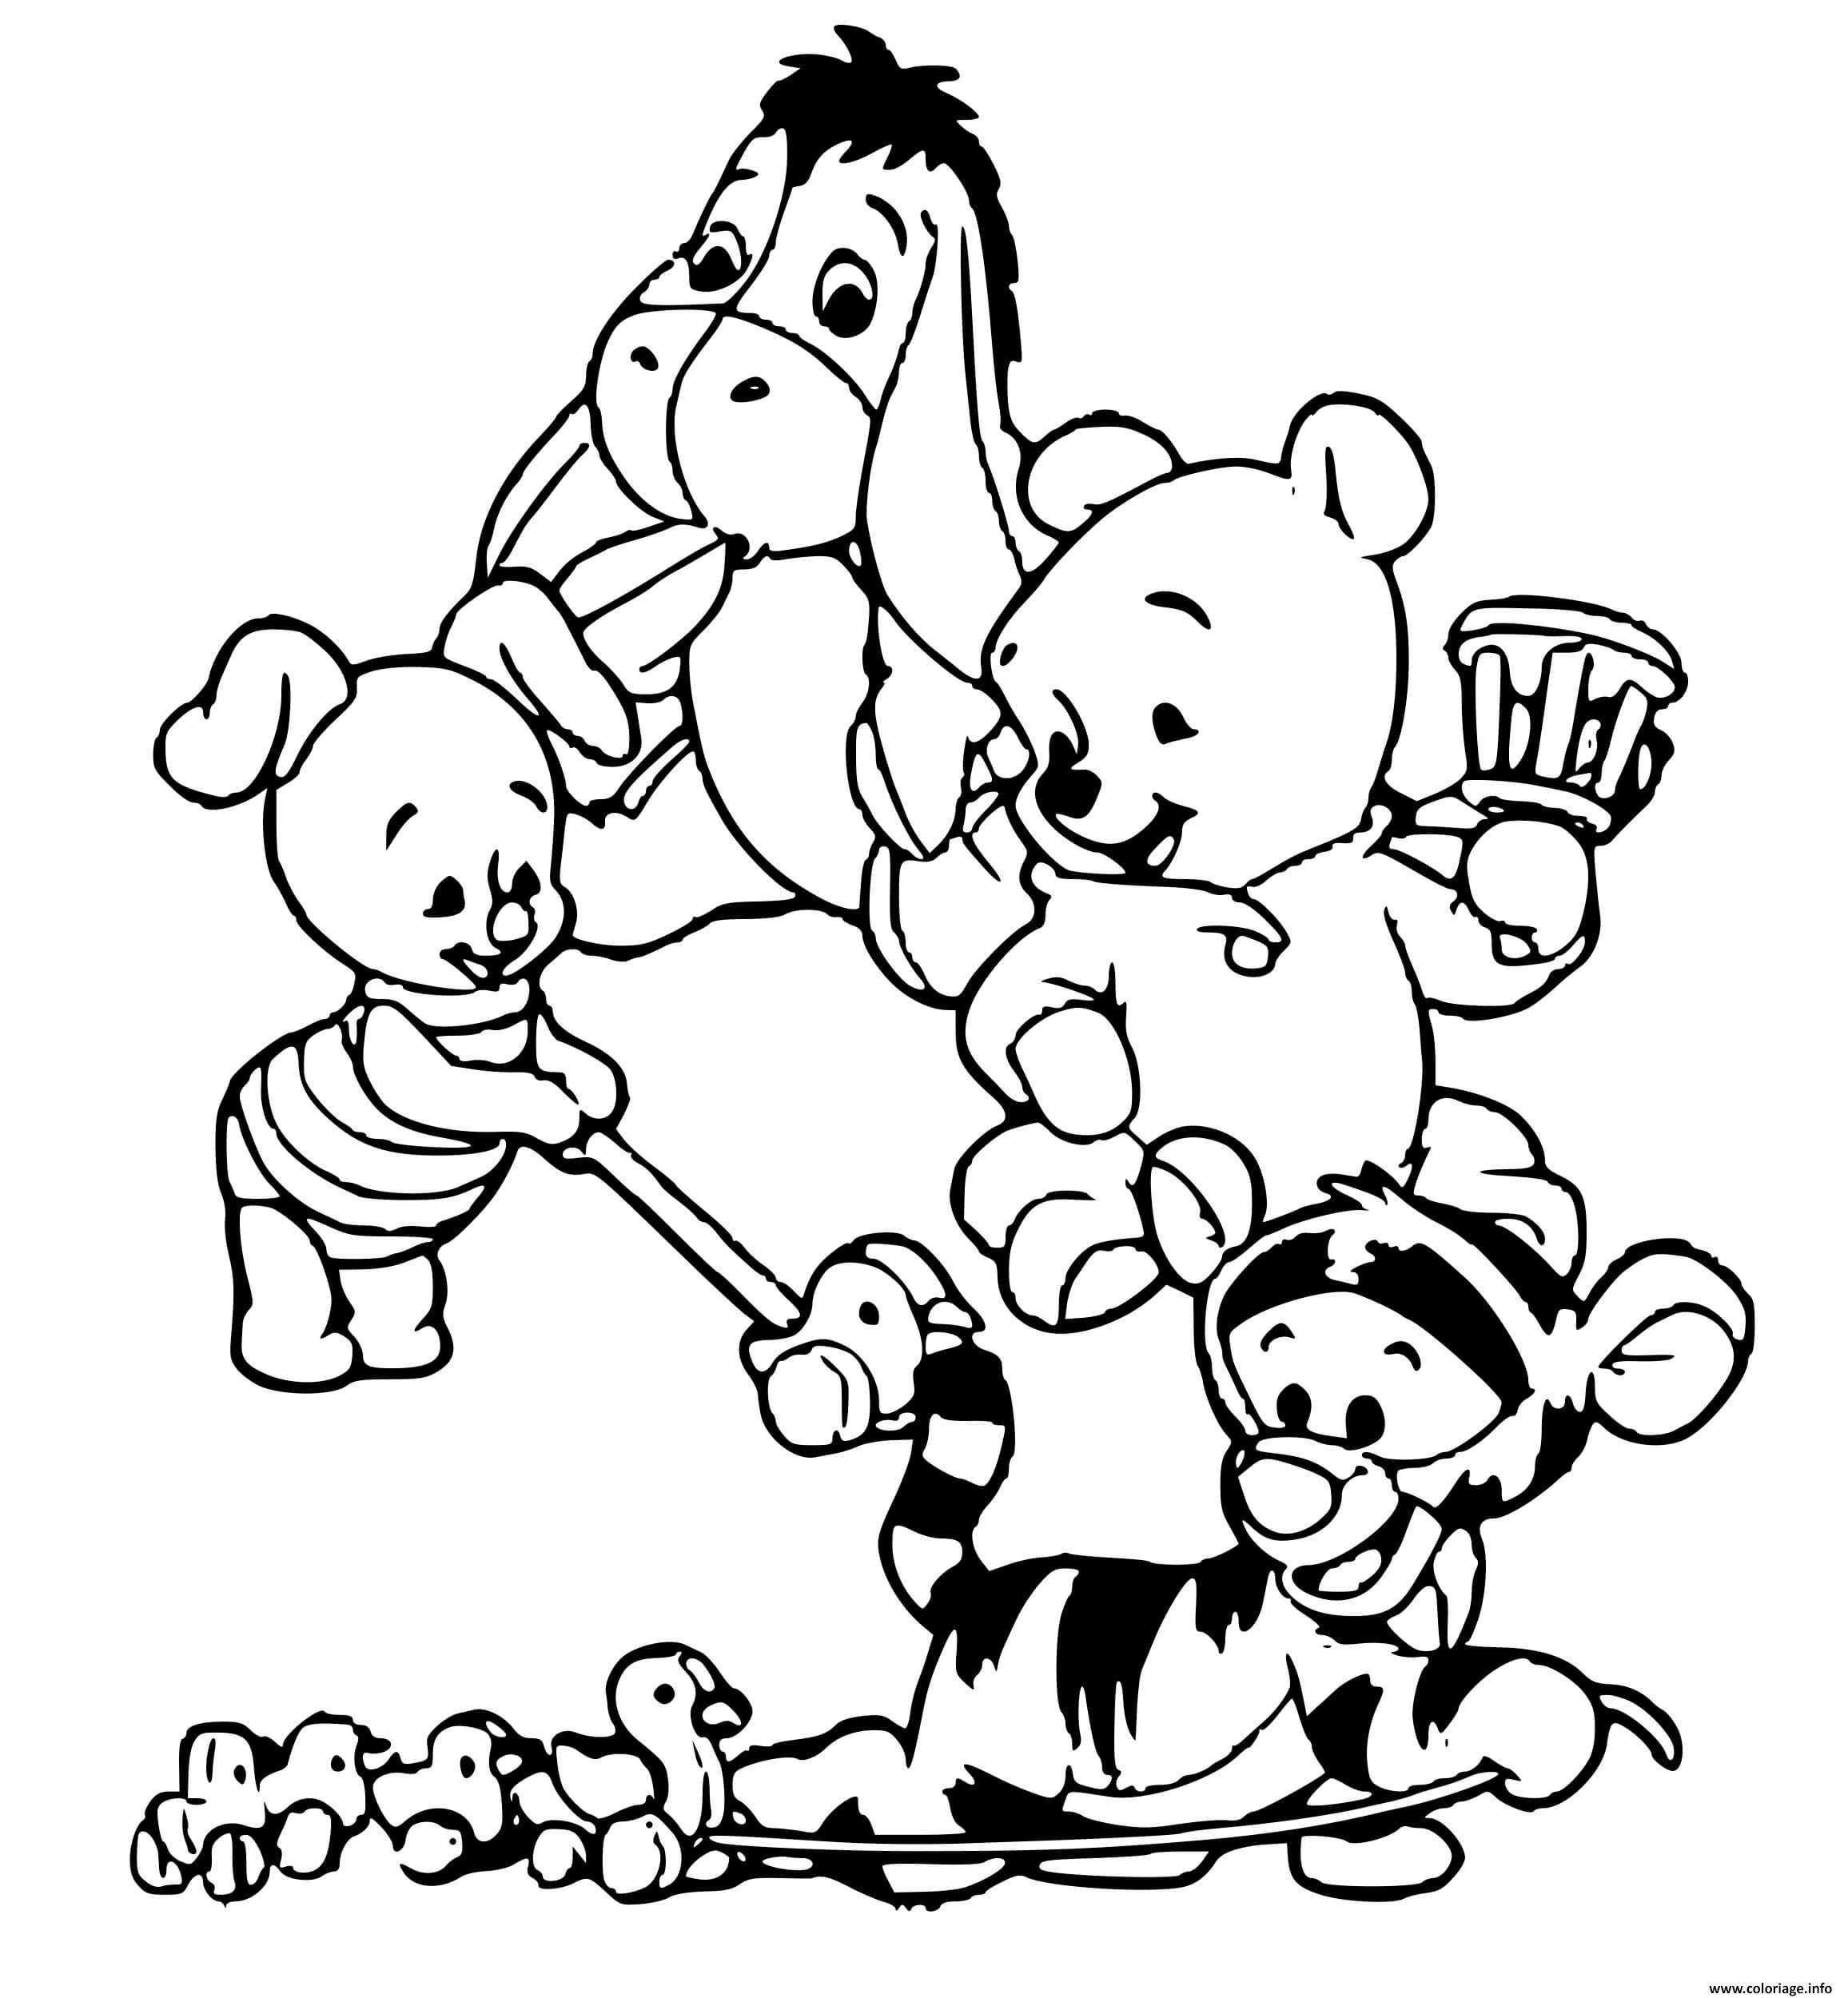 Coloriage Porcinet Winnie Tigrou Bourriquet Quand Ils Etaient Bebe à Dessin Disney Bebe